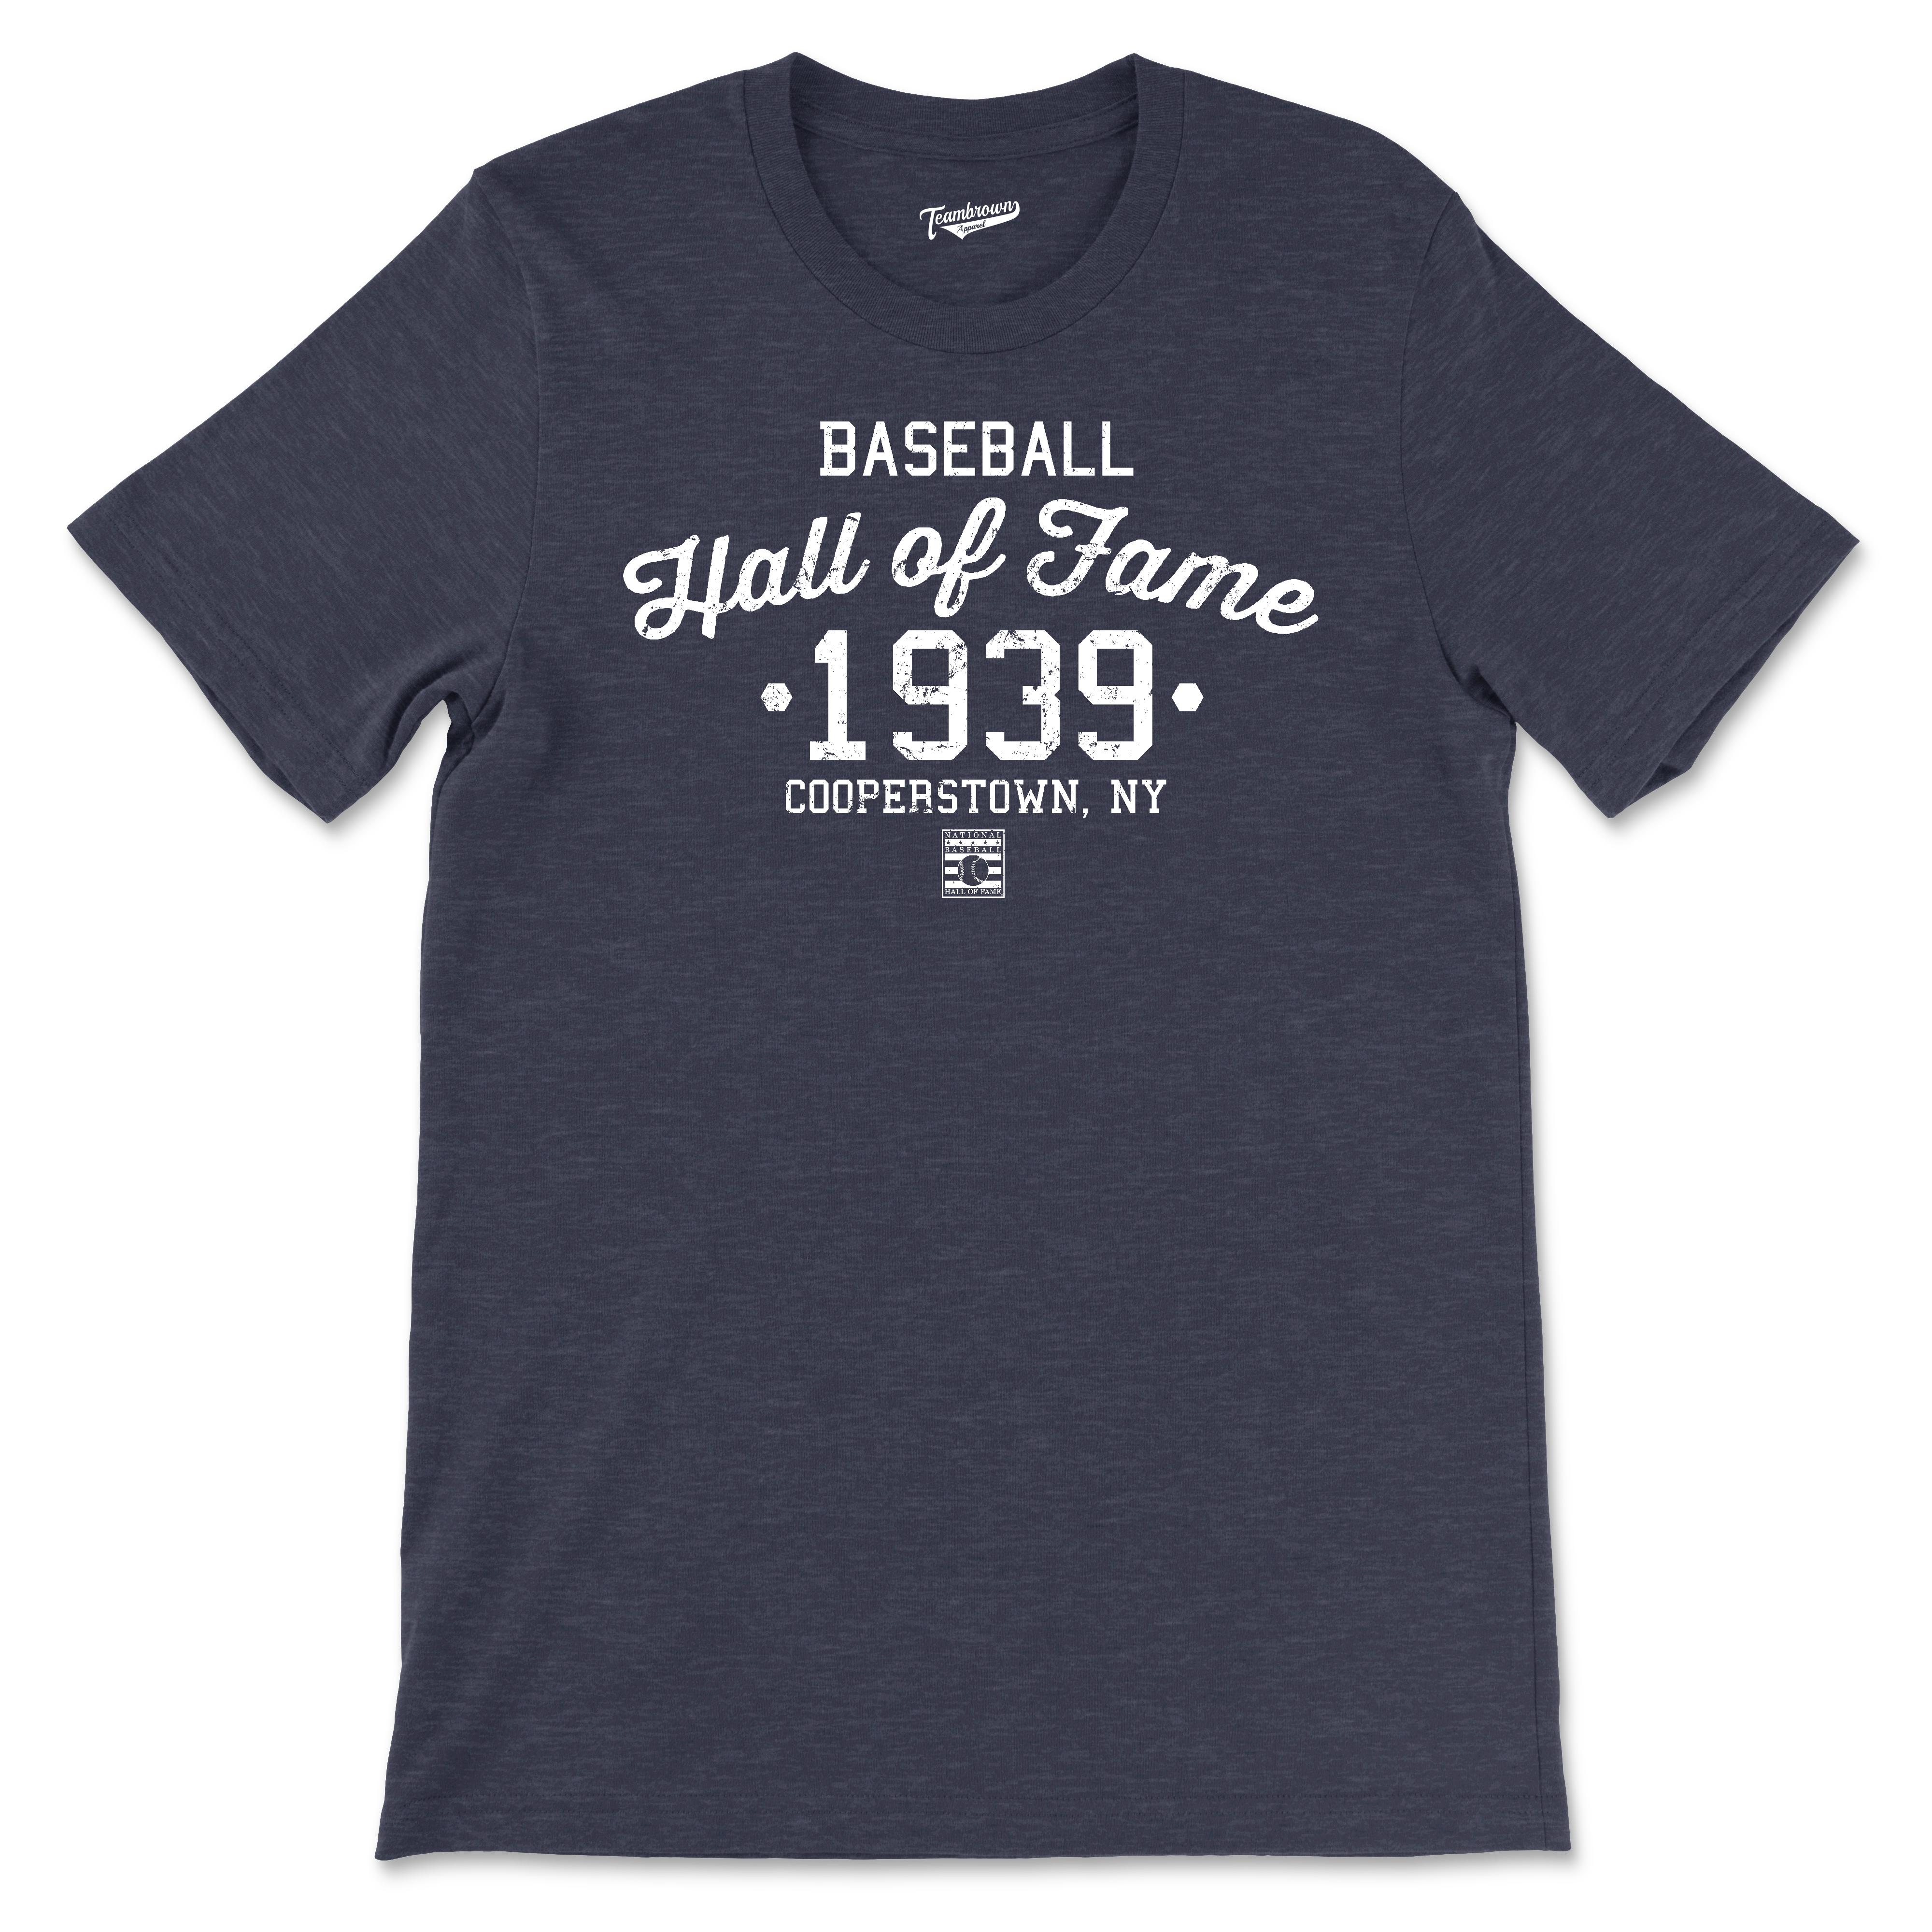 Baseball Hall of Fame - Est 1939 - Unisex T-Shirt